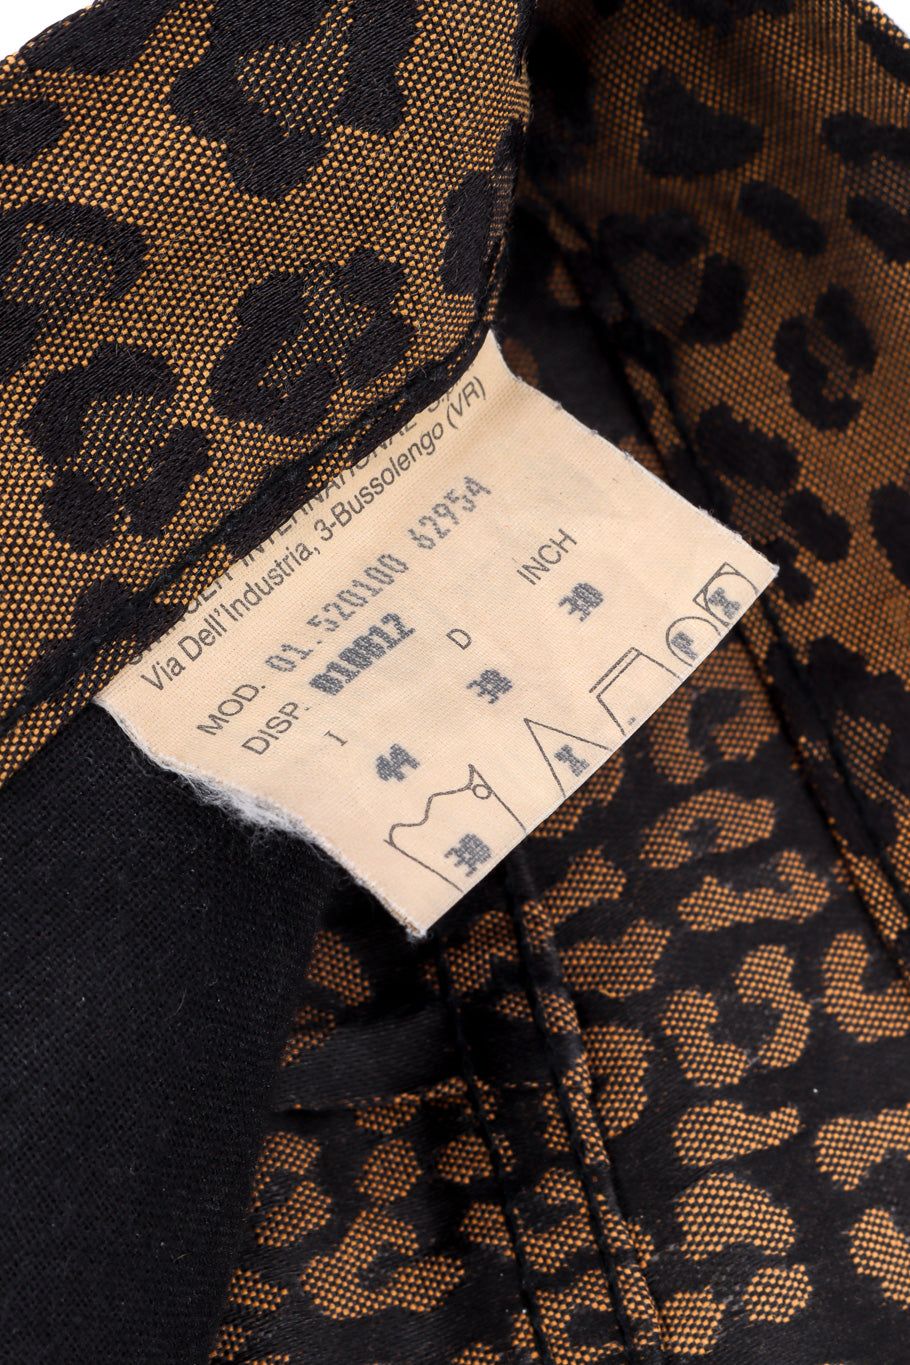 Twill Leopard Jean by Fendi fabric tag @recessla